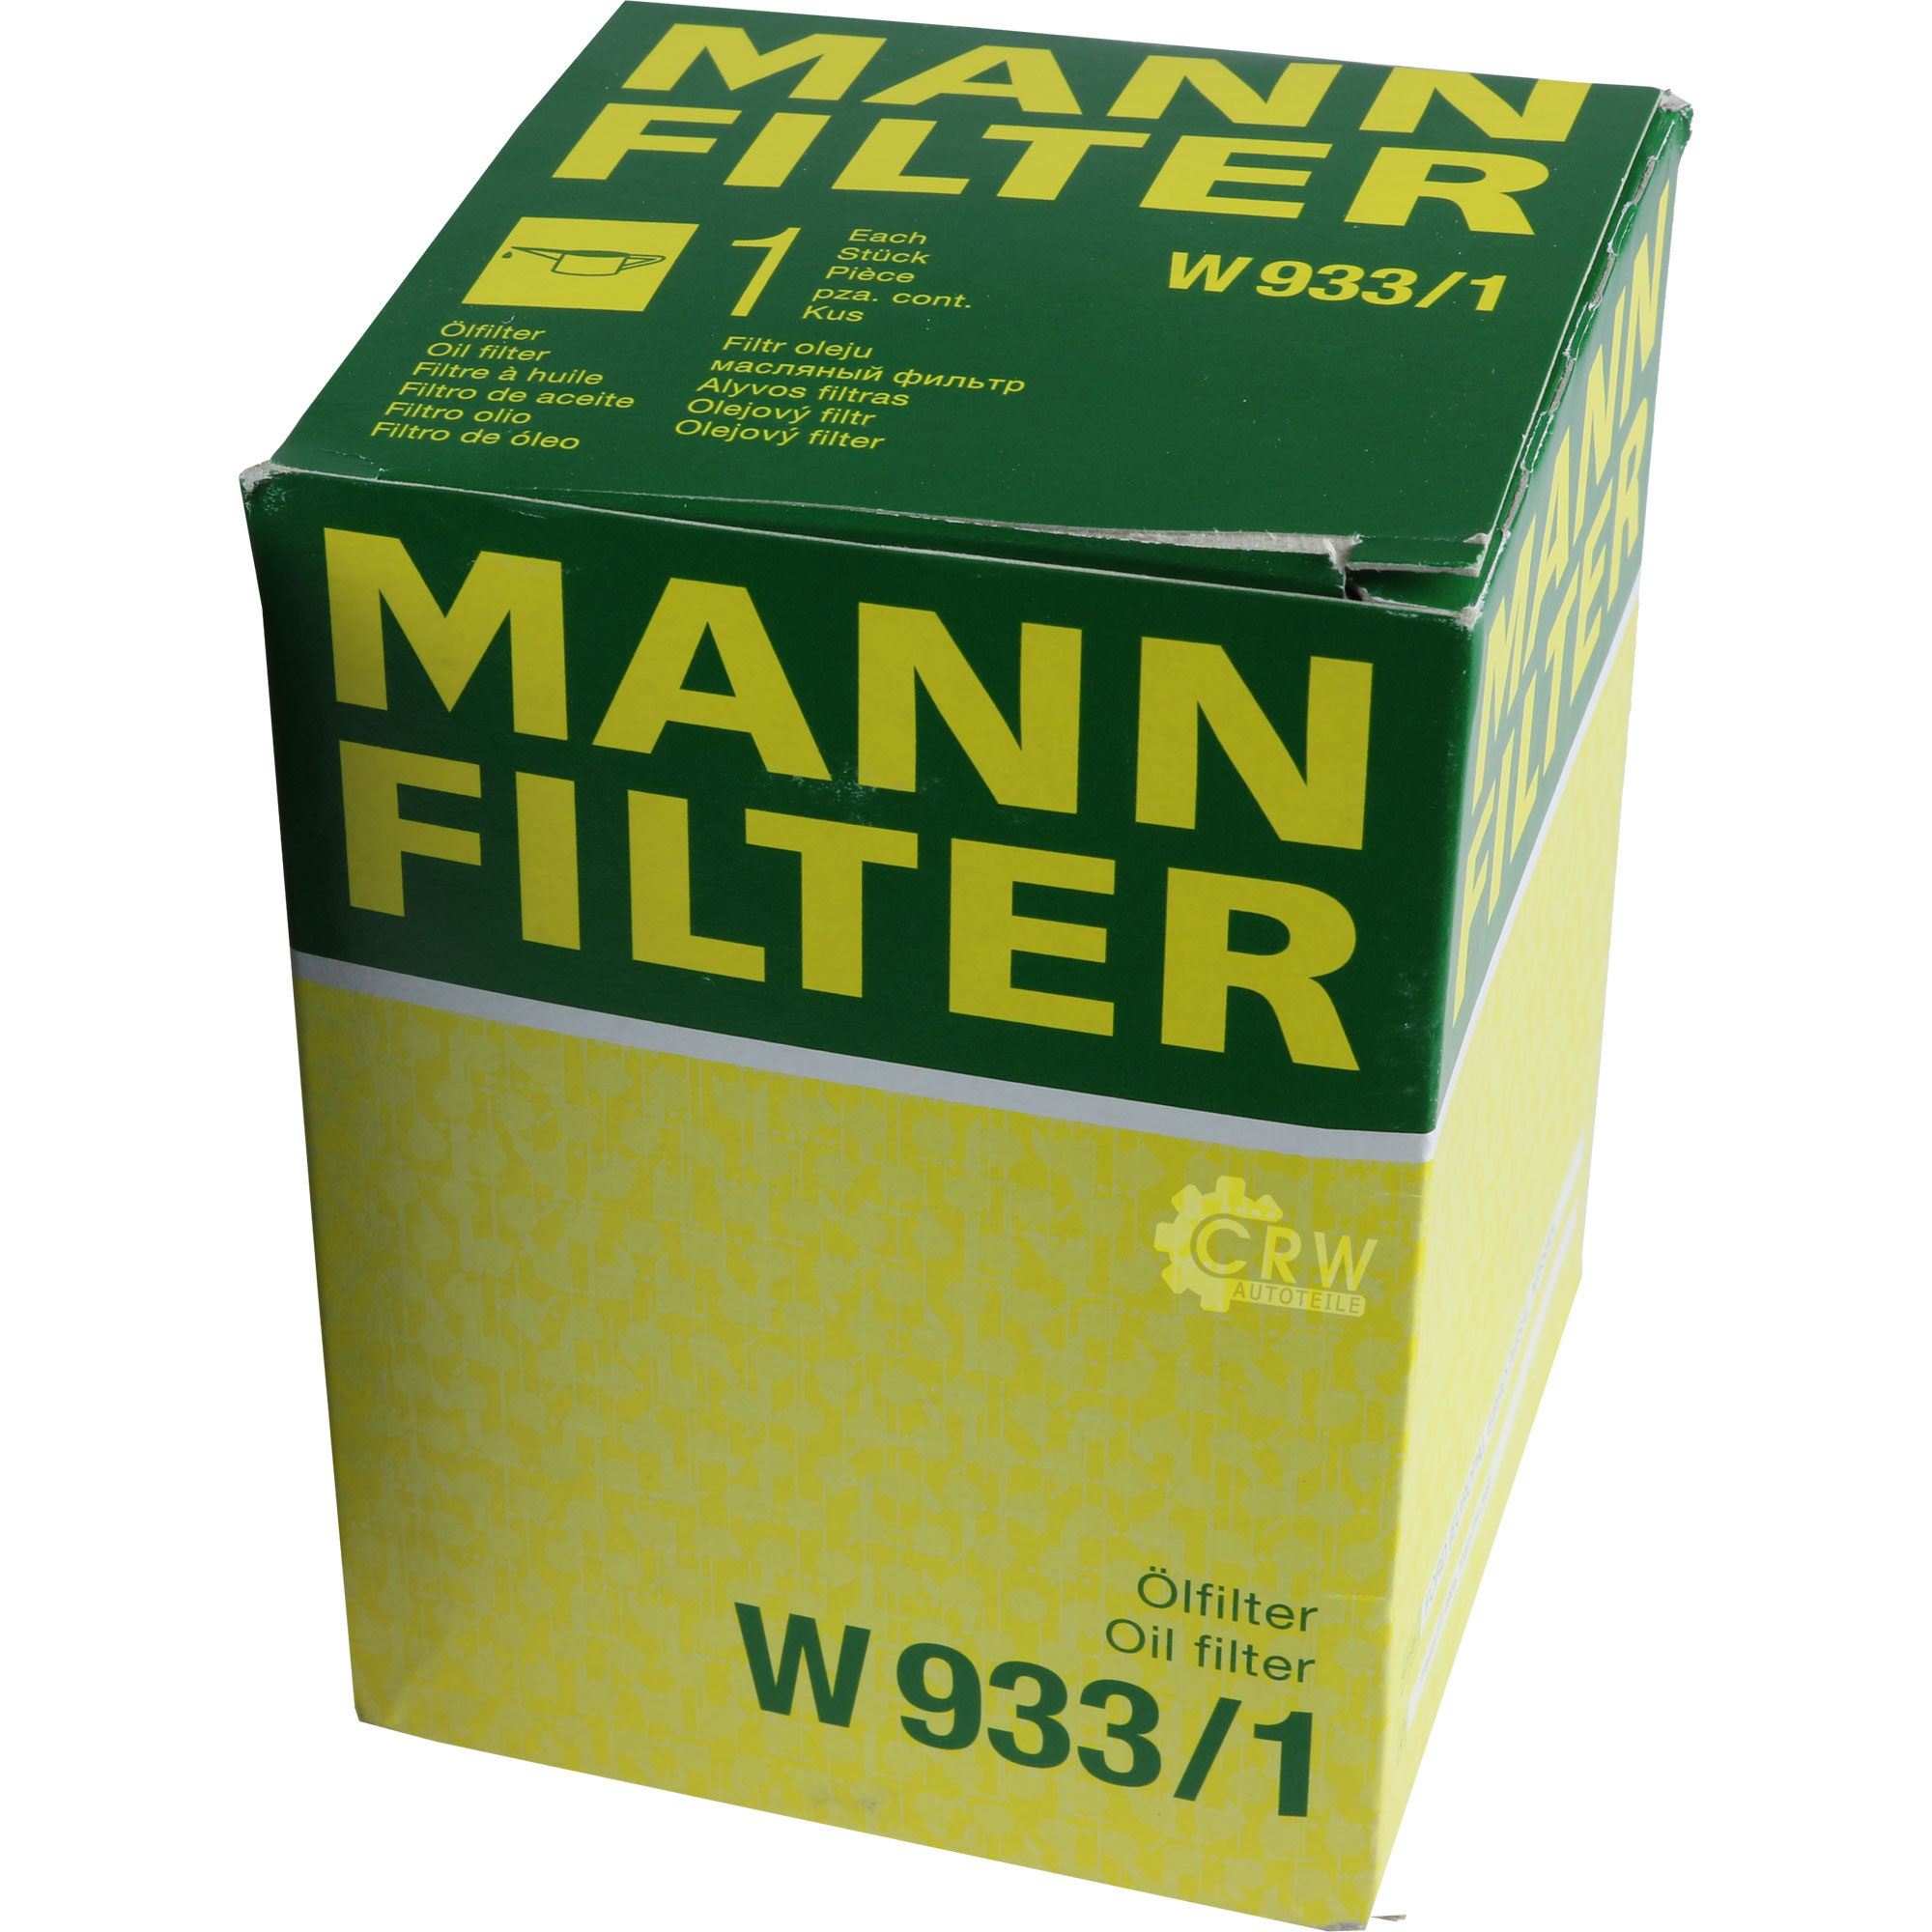 MANN-FILTER Ölfilter W 933/1 Oil Filter